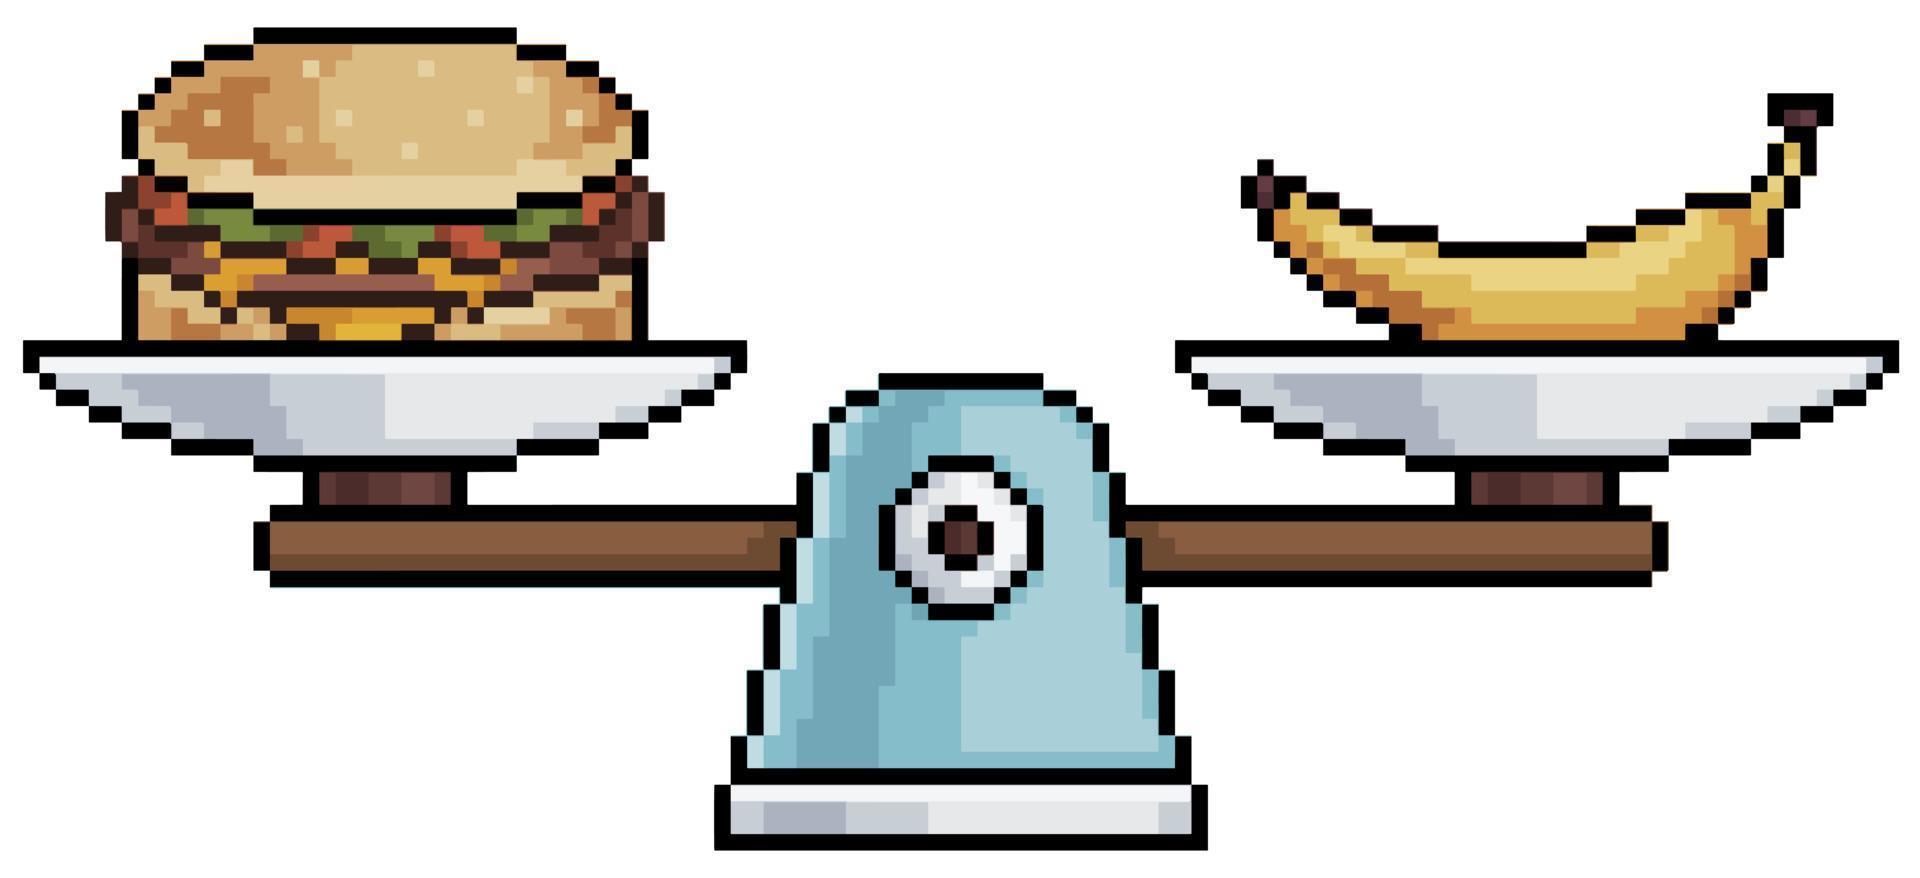 bilancia alimentare pixel art. cibo sano vs cibo cattivo icona vettore per il gioco a 8 bit su sfondo bianco